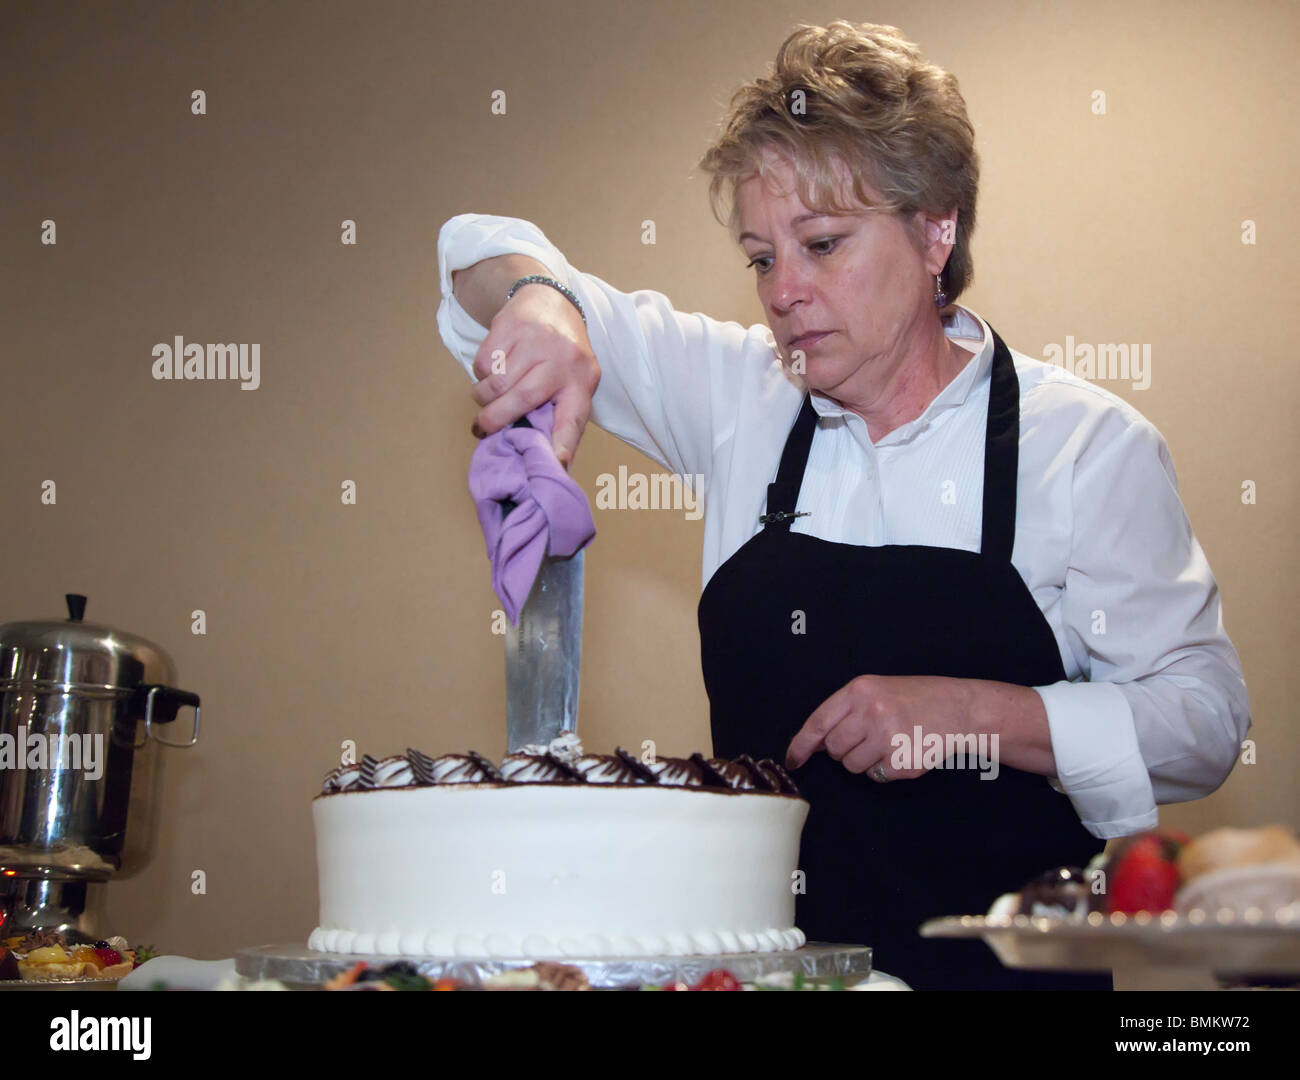 Detroit, Michigan - Un employé de restauration coupe le cake à l'occasion d'un mariage. Banque D'Images